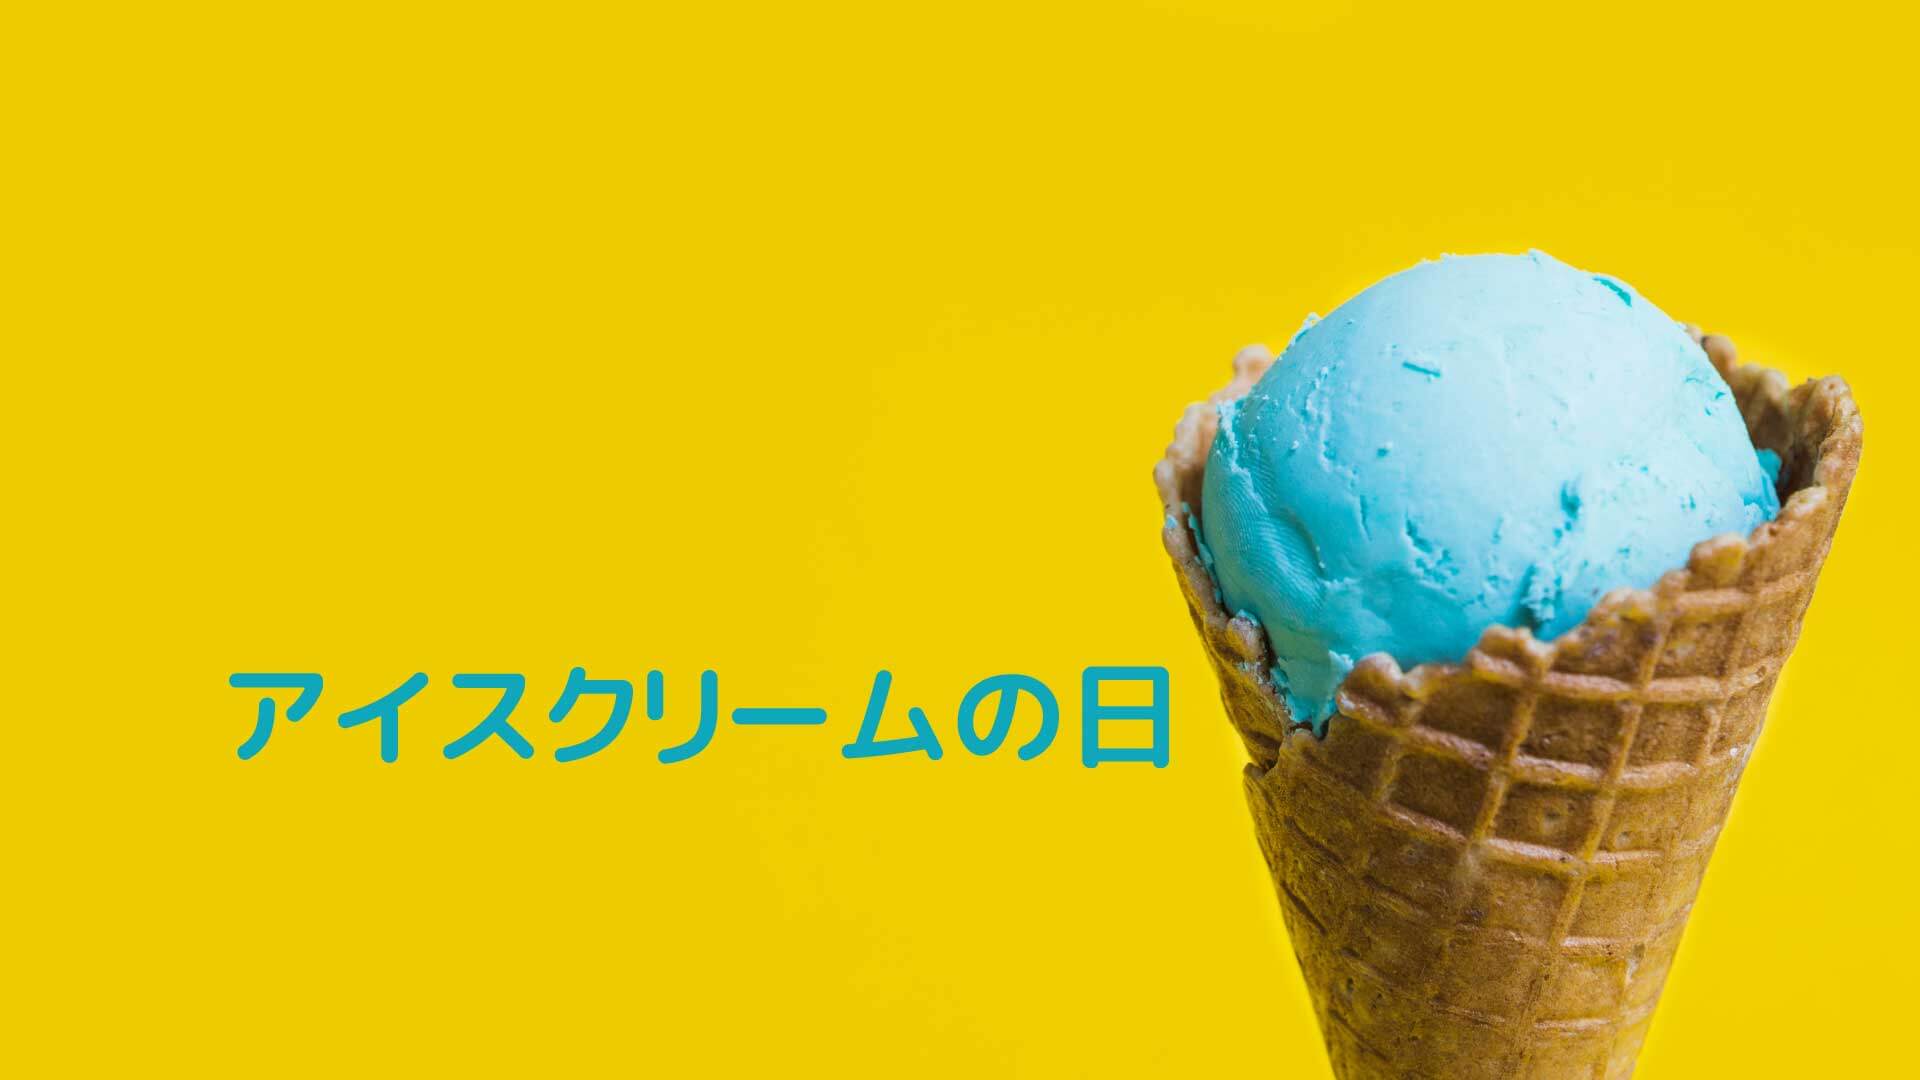 5月9日はアイスクリームの日